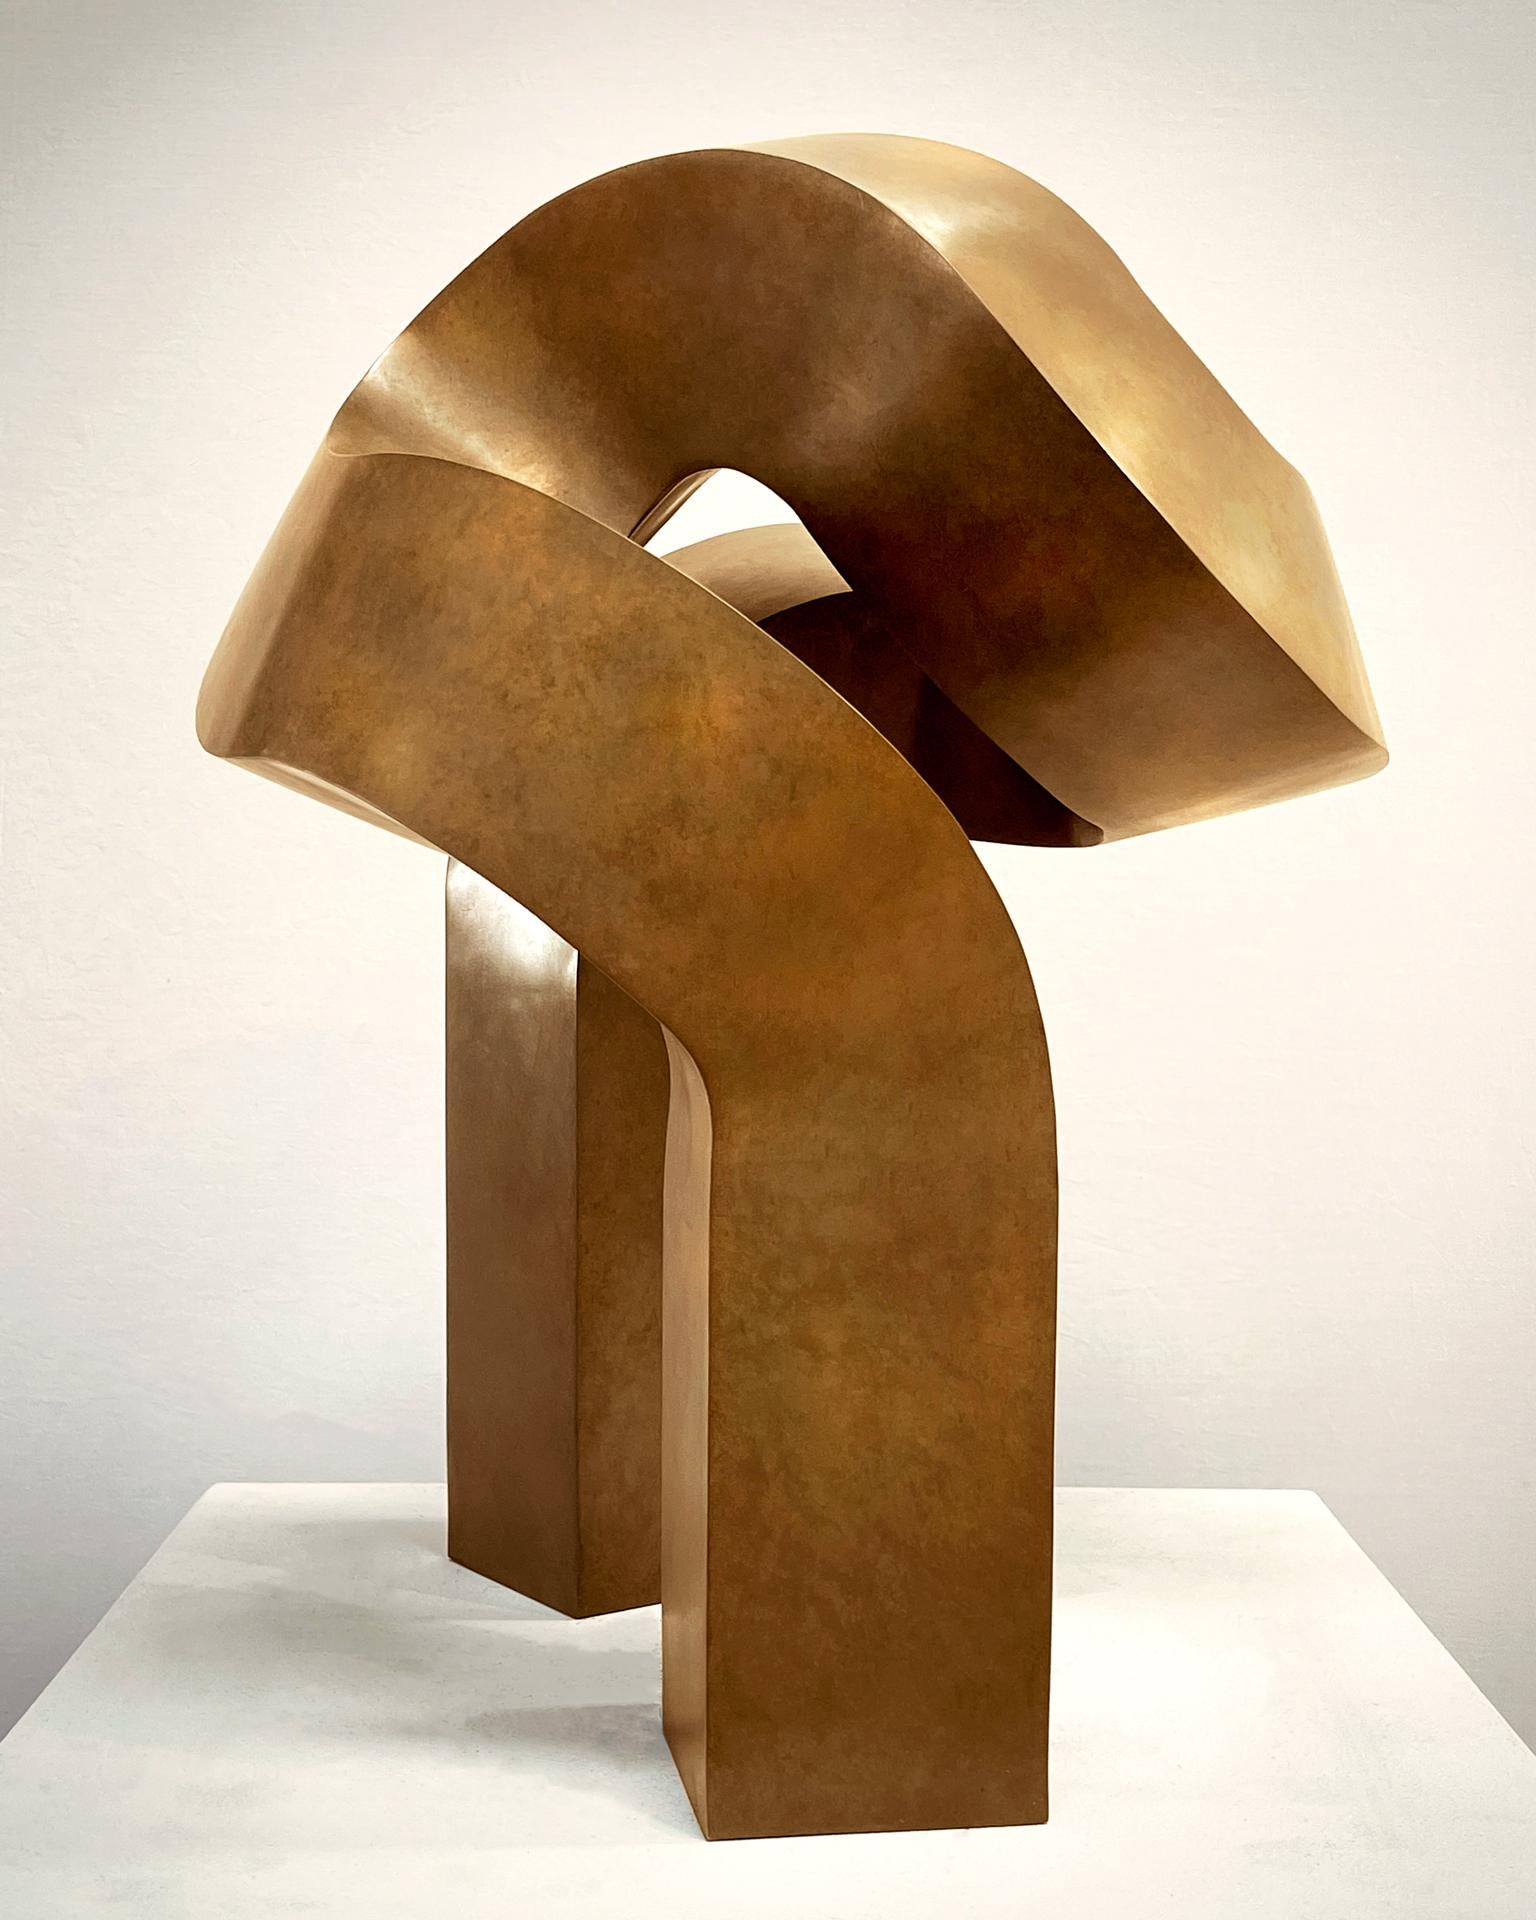 Clement Meadmore Abstract Sculpture – "Außerdem" minimalistische Bronzeskulptur 